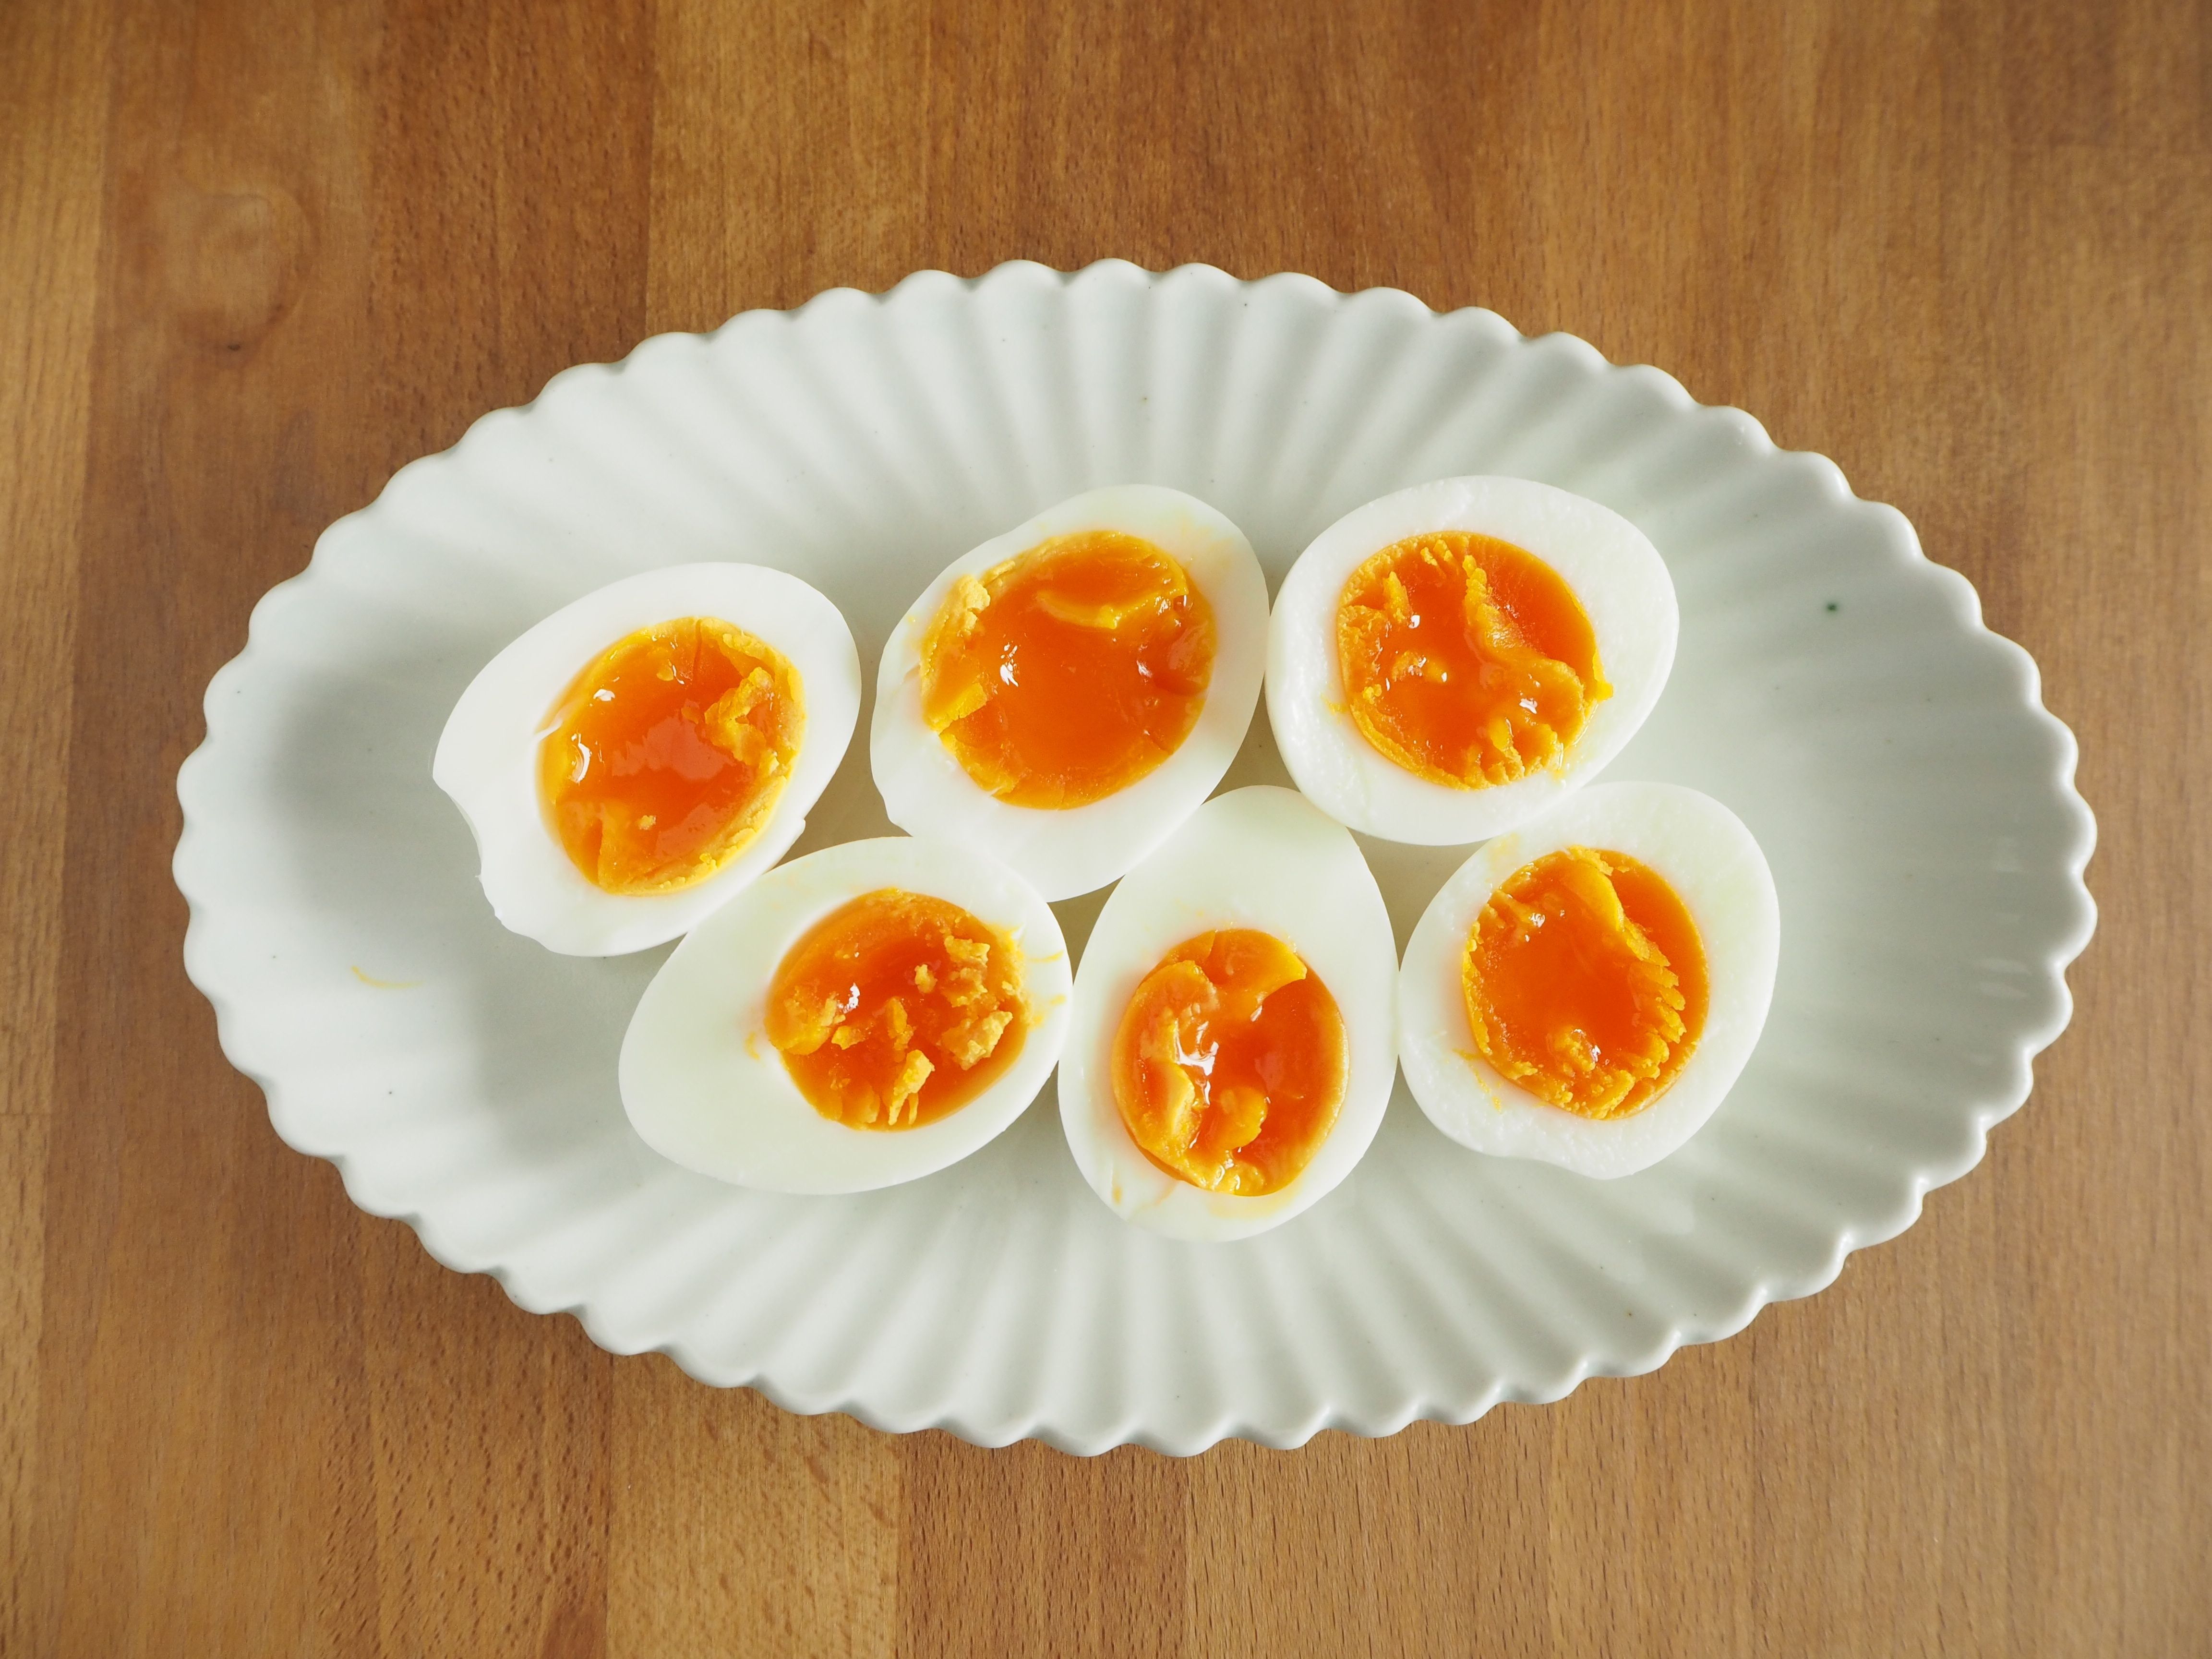 マツコの知らない世界』で紹介された「最強のゆで卵」を作ってみて